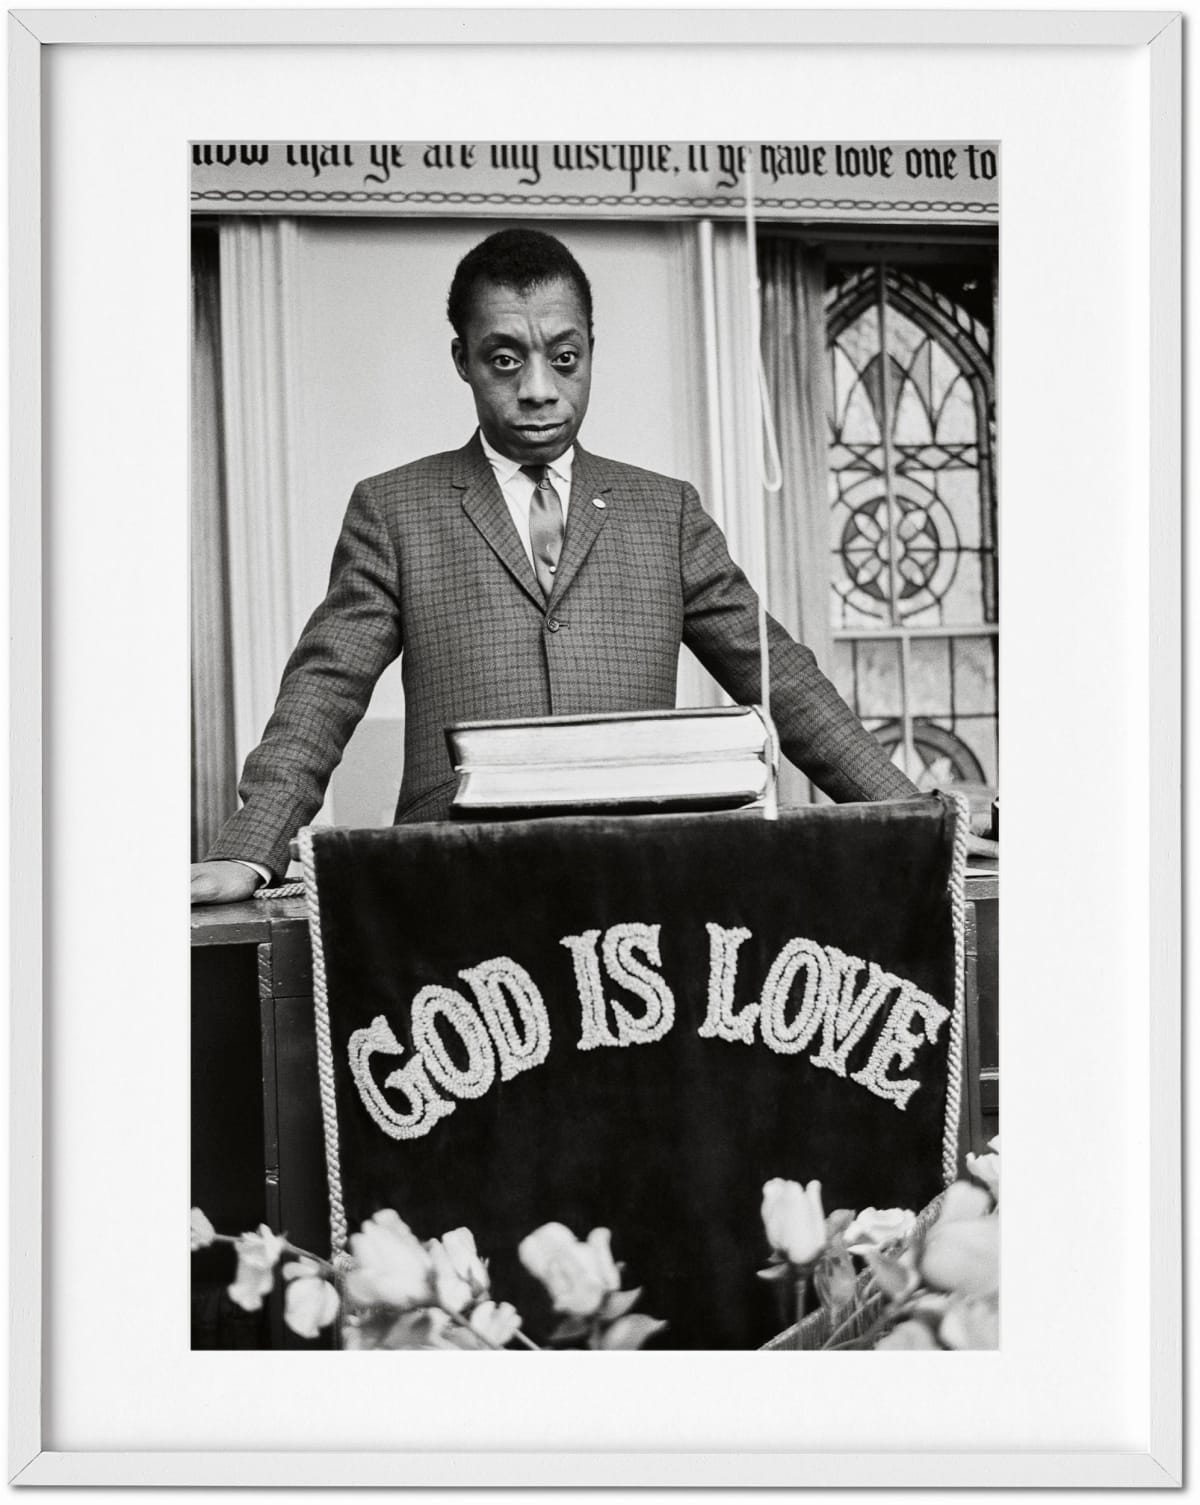 James Baldwin. The Fire Next Time, Art Edition No. 51–100, Steve Schapiro ‘James Baldwin’